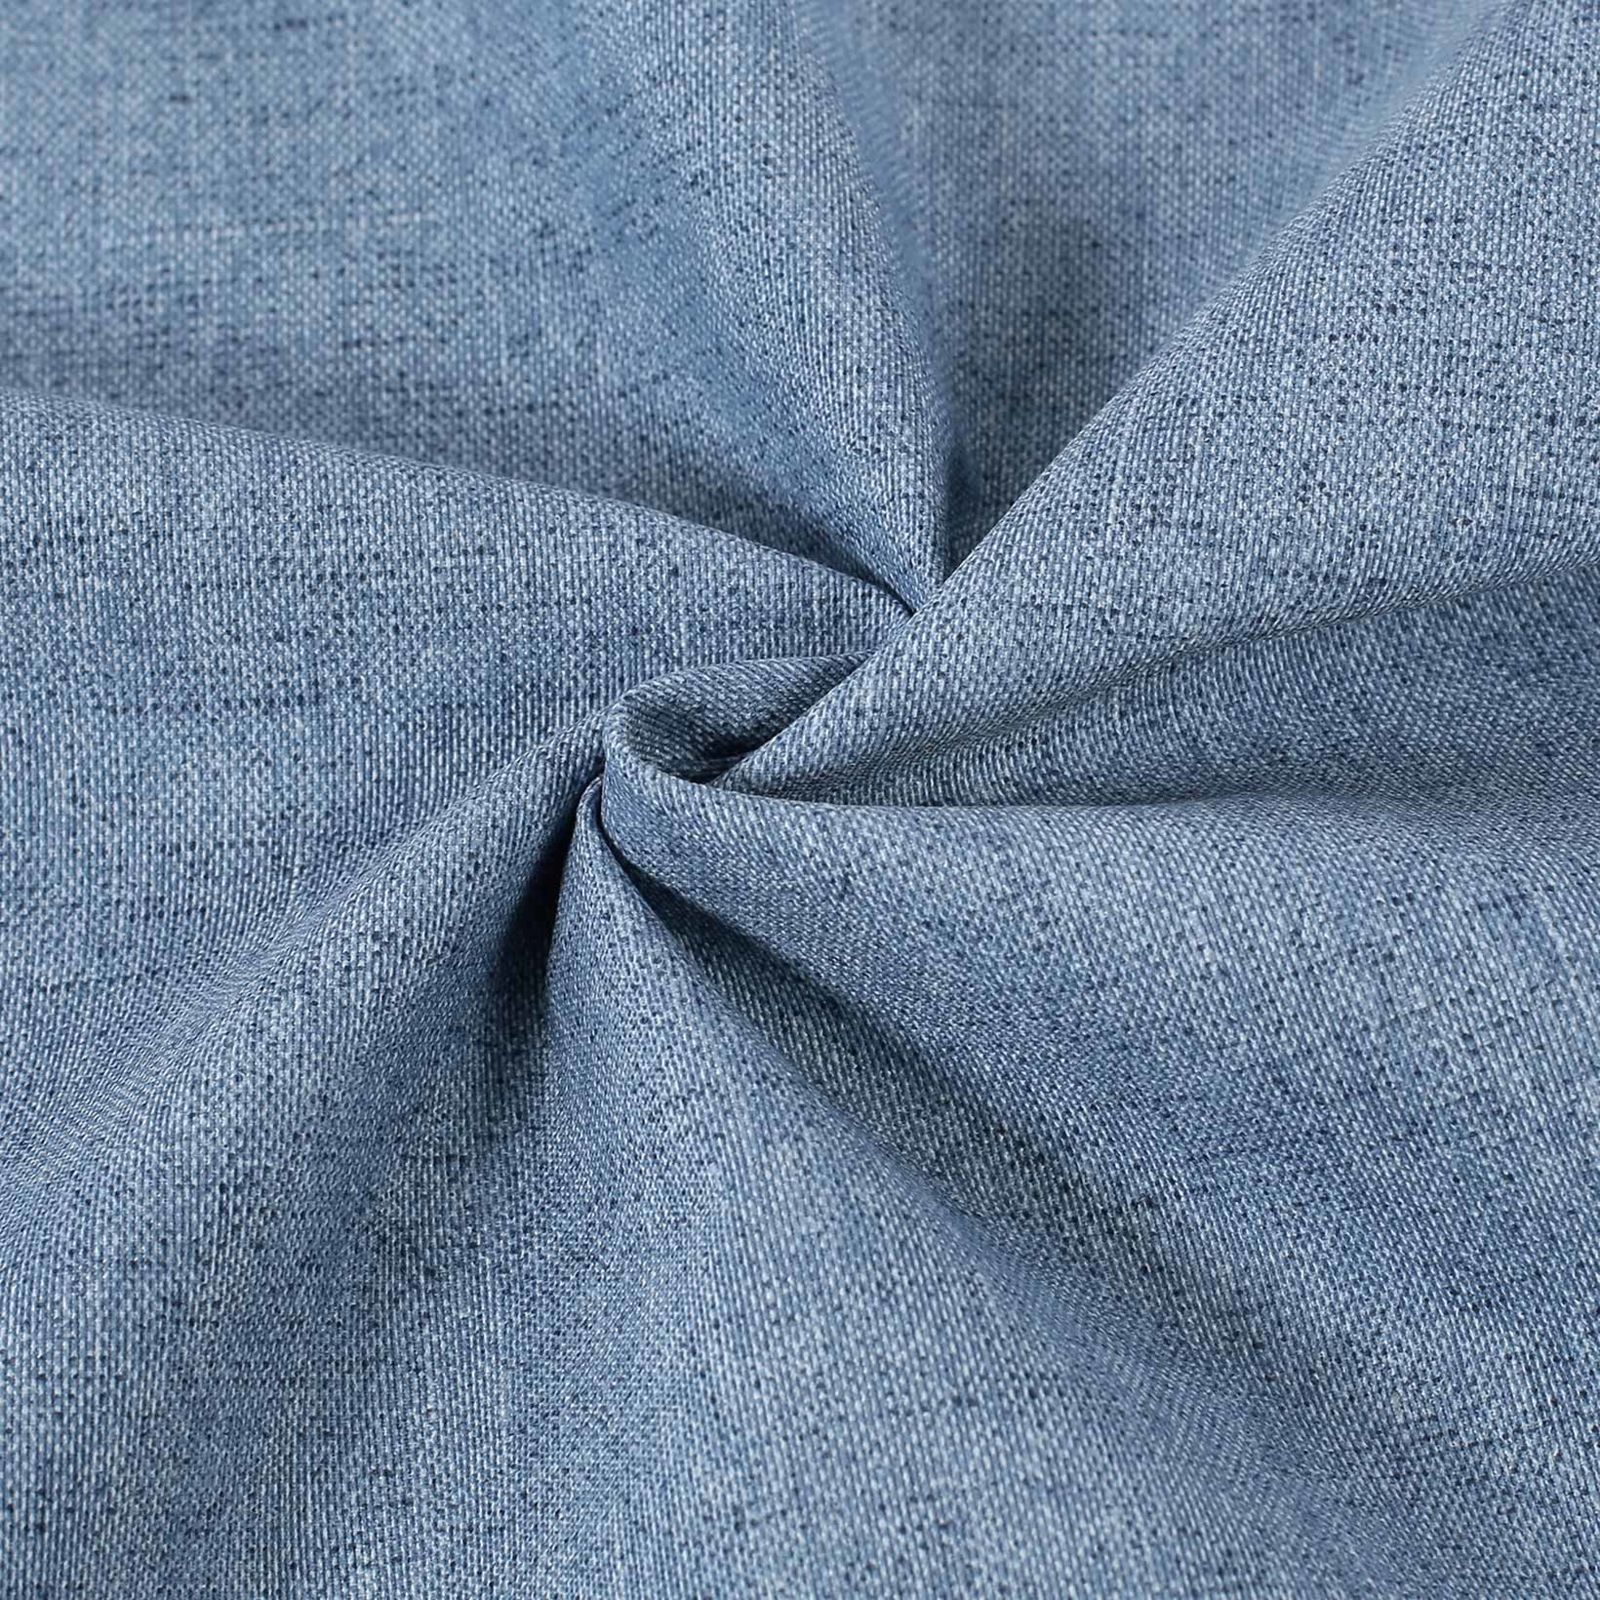 Tkanina dekoracyjna Loneta - niebieska cieniowana